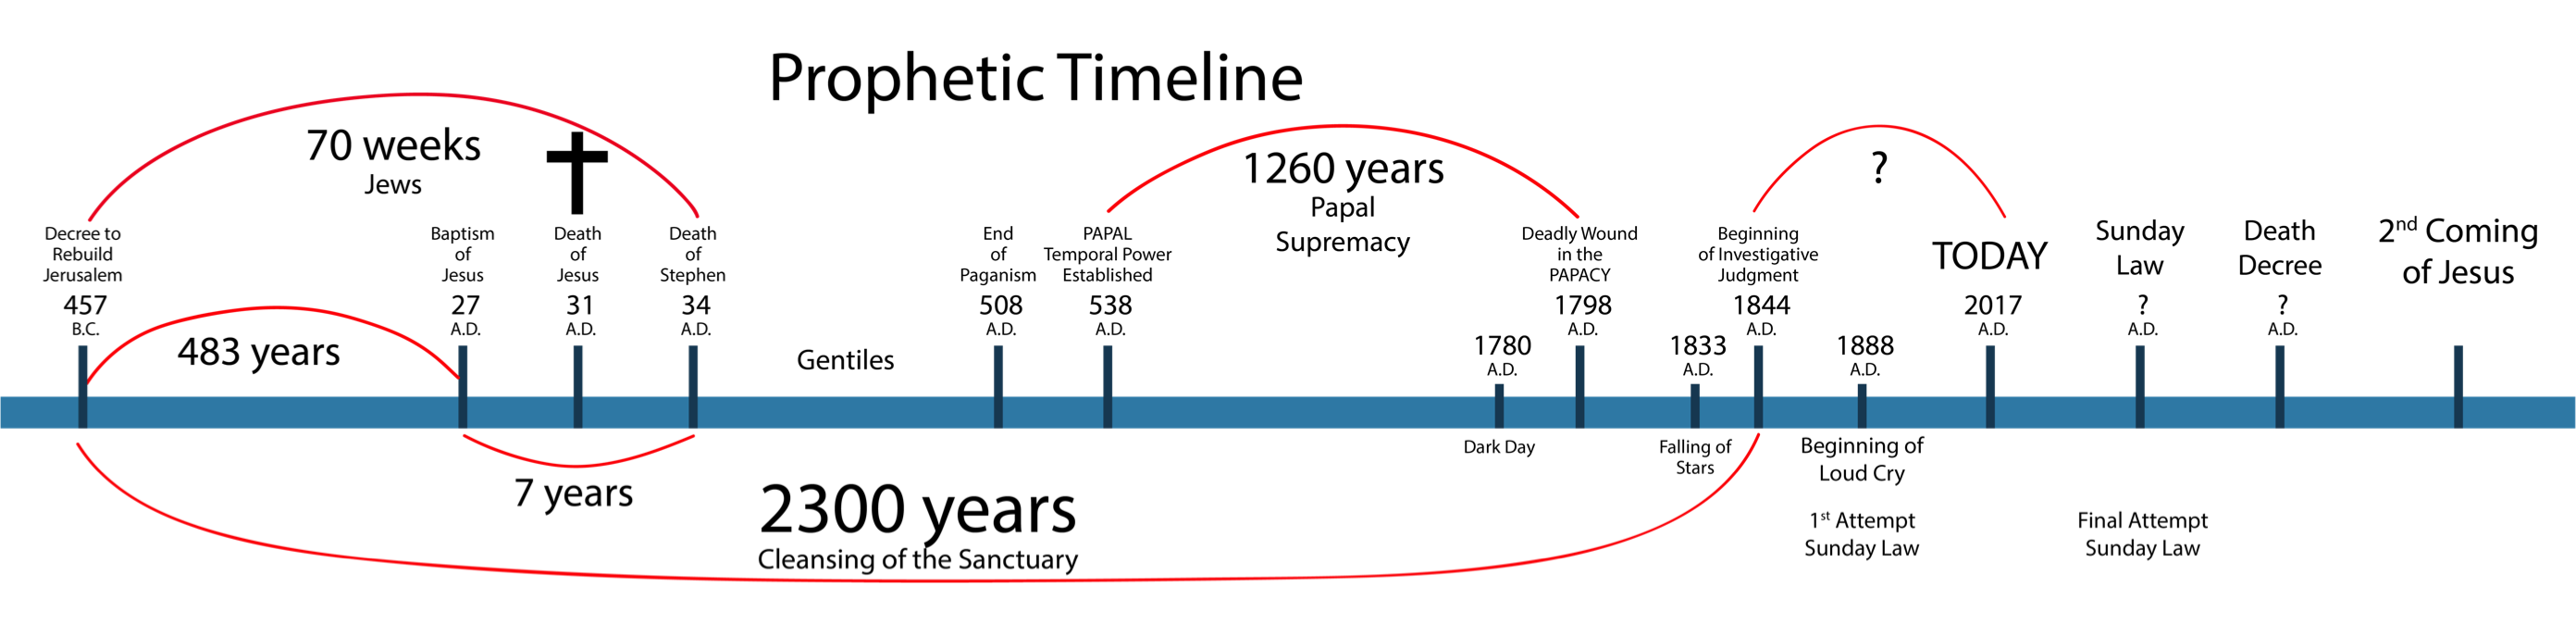 daniel-prophecy-timeline